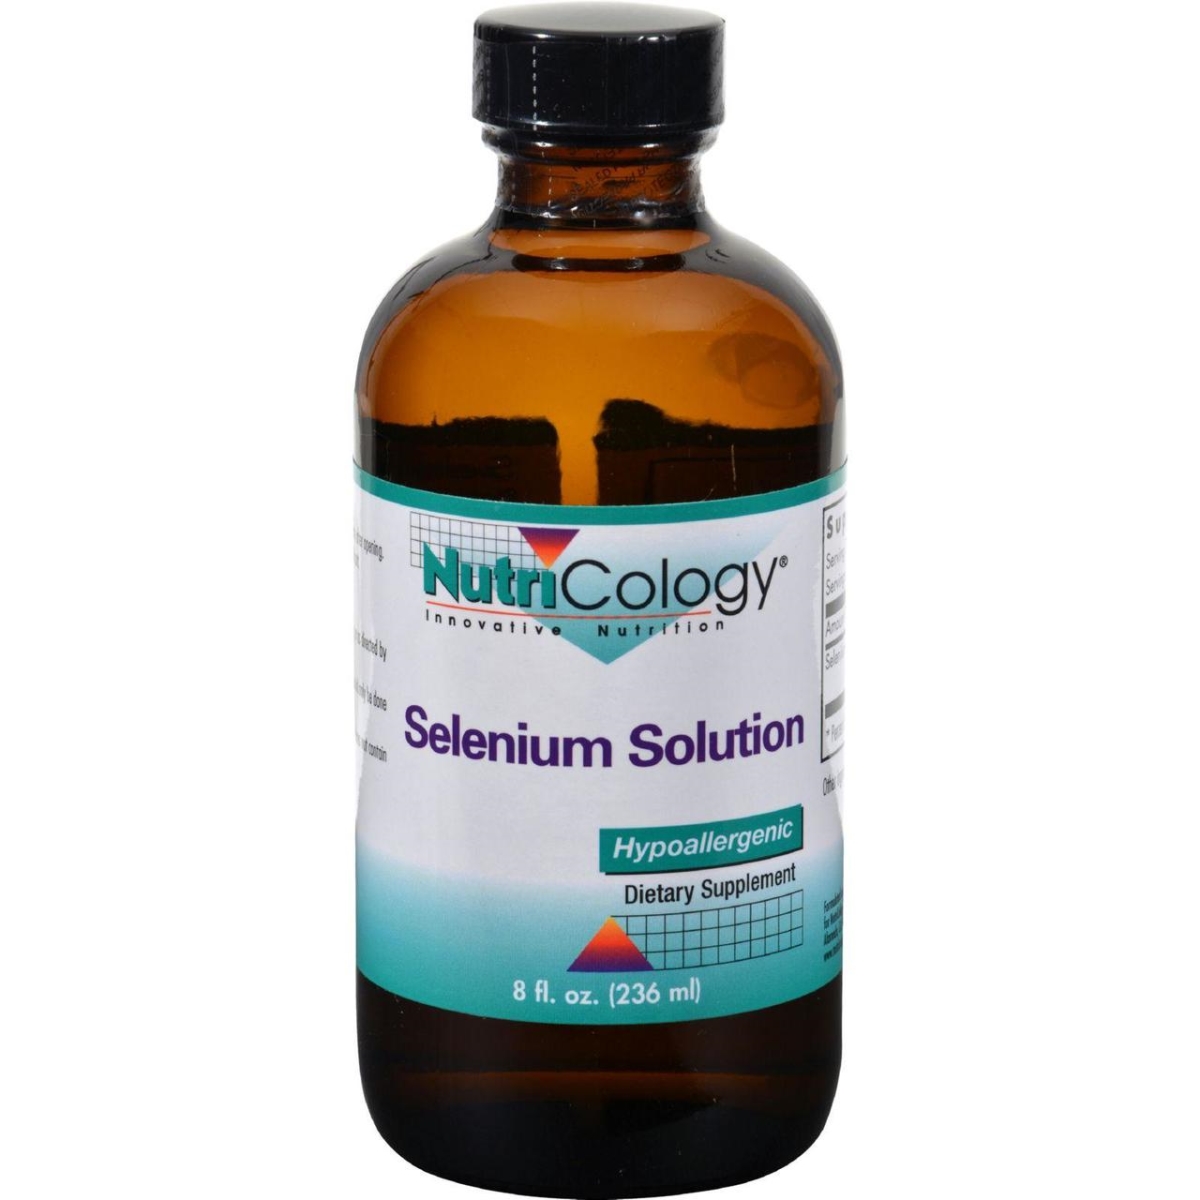 Hg0524710 8 Oz Sodium Selenite